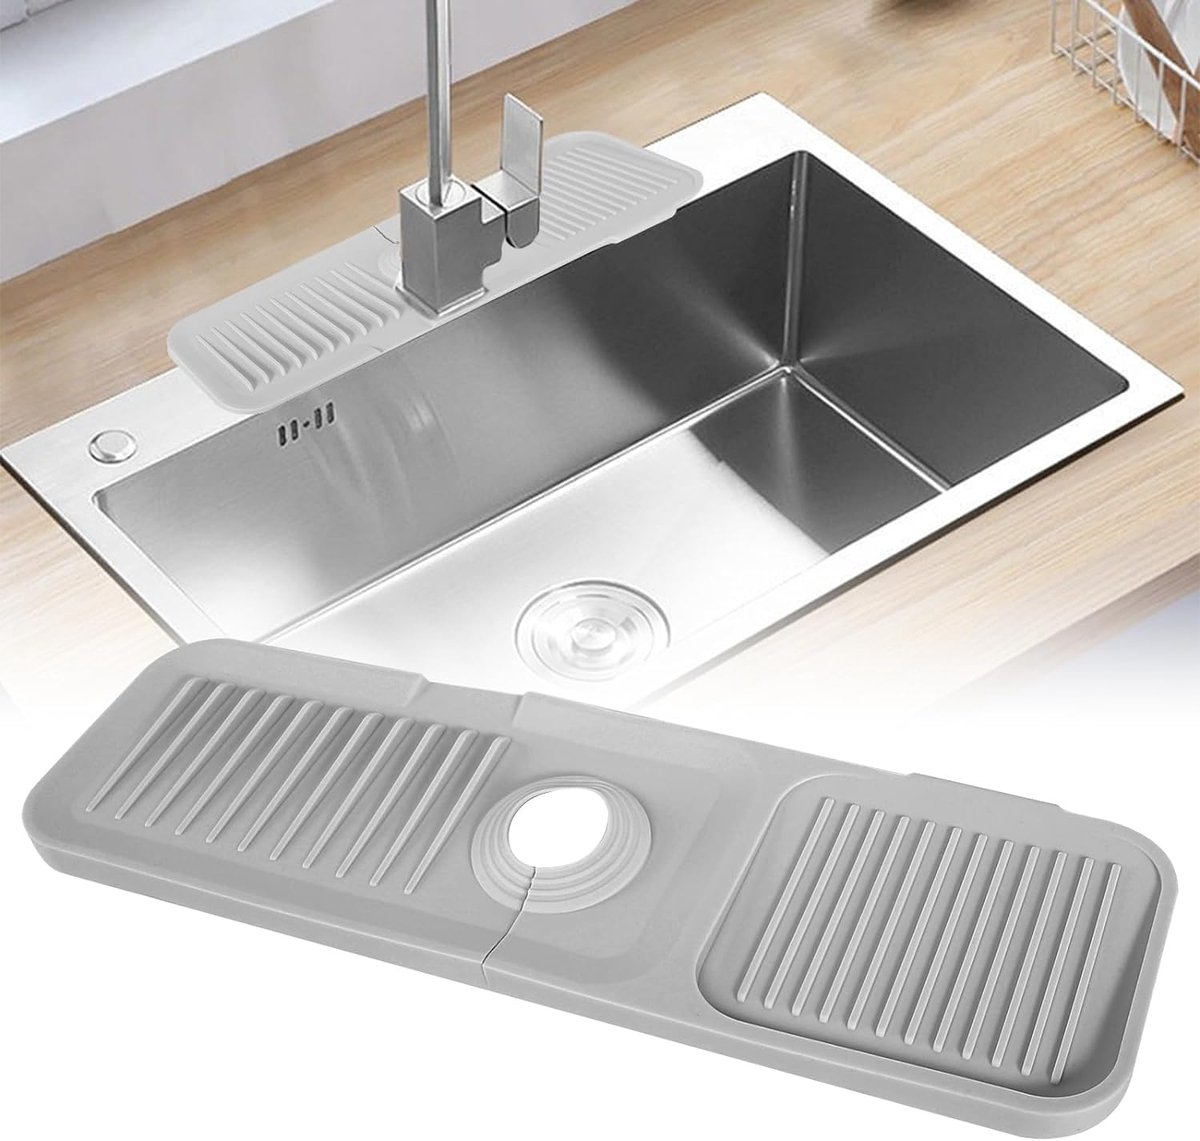 Spatbescherming voor gootsteen - Siliconen afdruipmat voor waterkraan en wastafel - Grijs - Keuken en badkamer - Werkbladbescherming